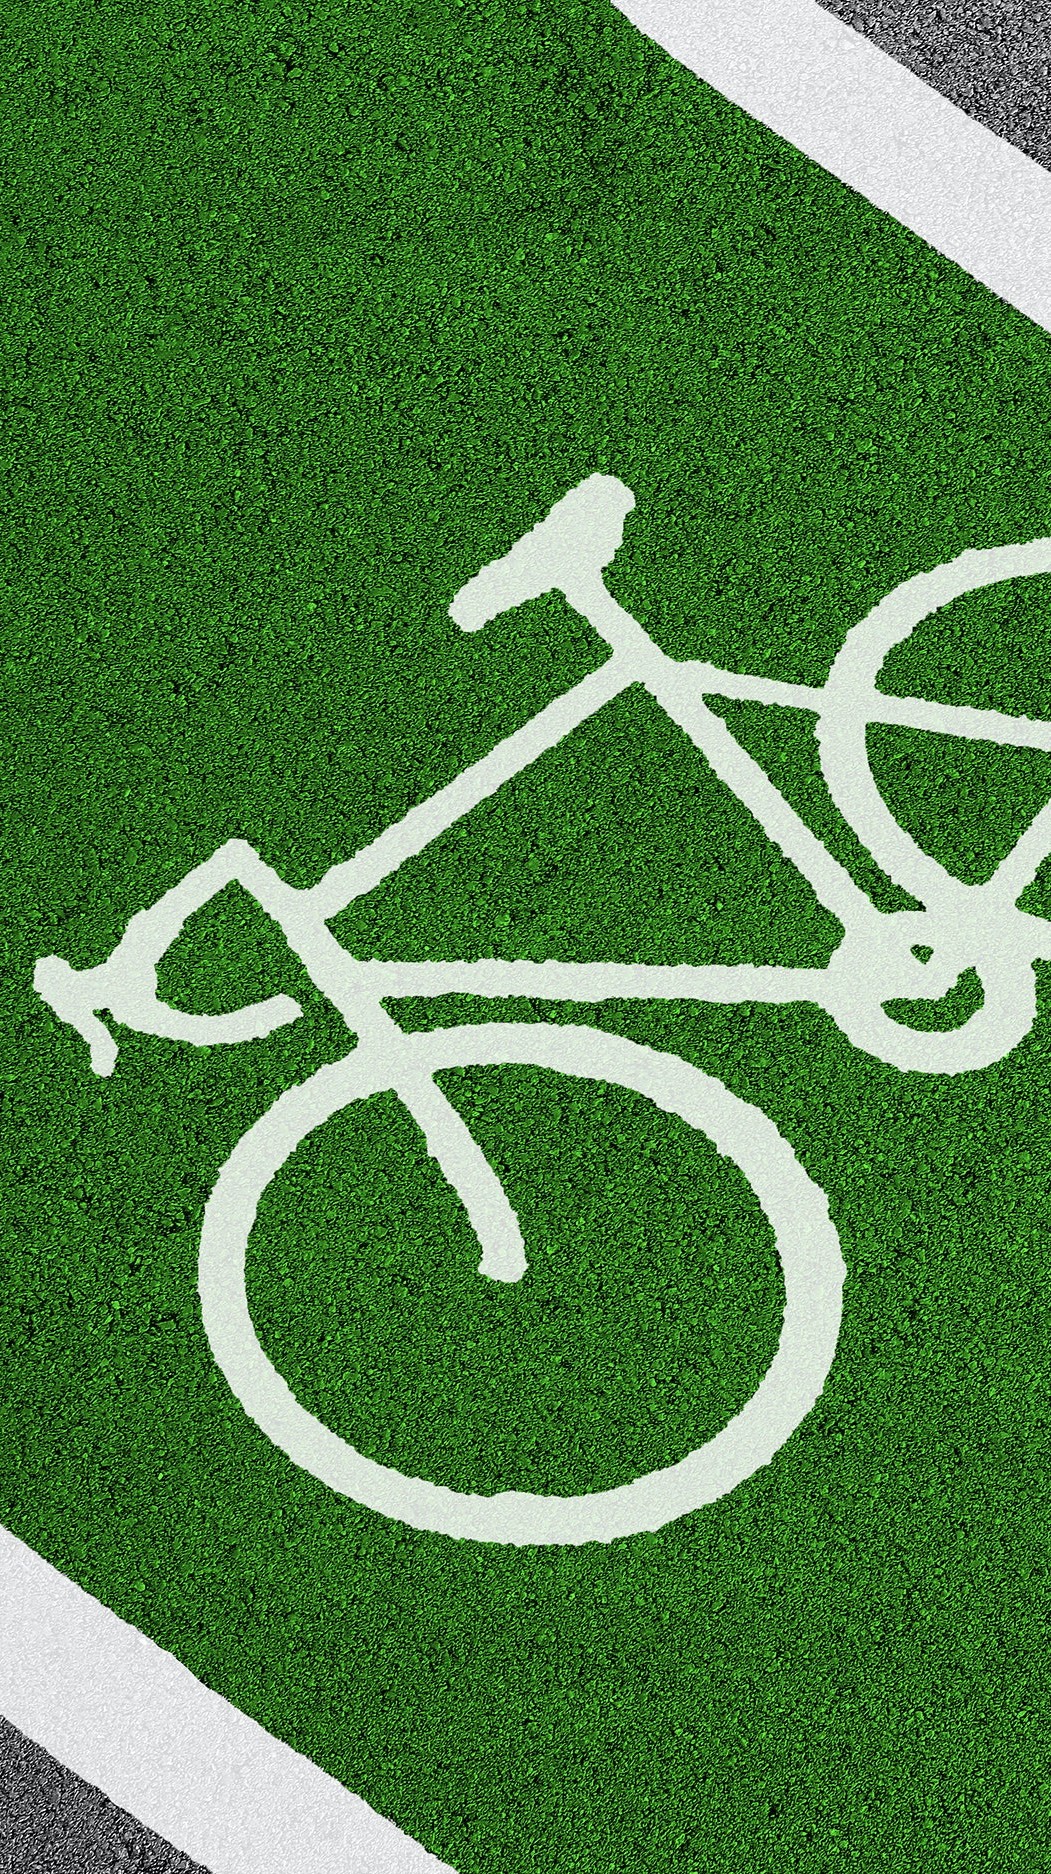 Gasolina nas alturas: 4 programas para trocar o carro por bicicleta